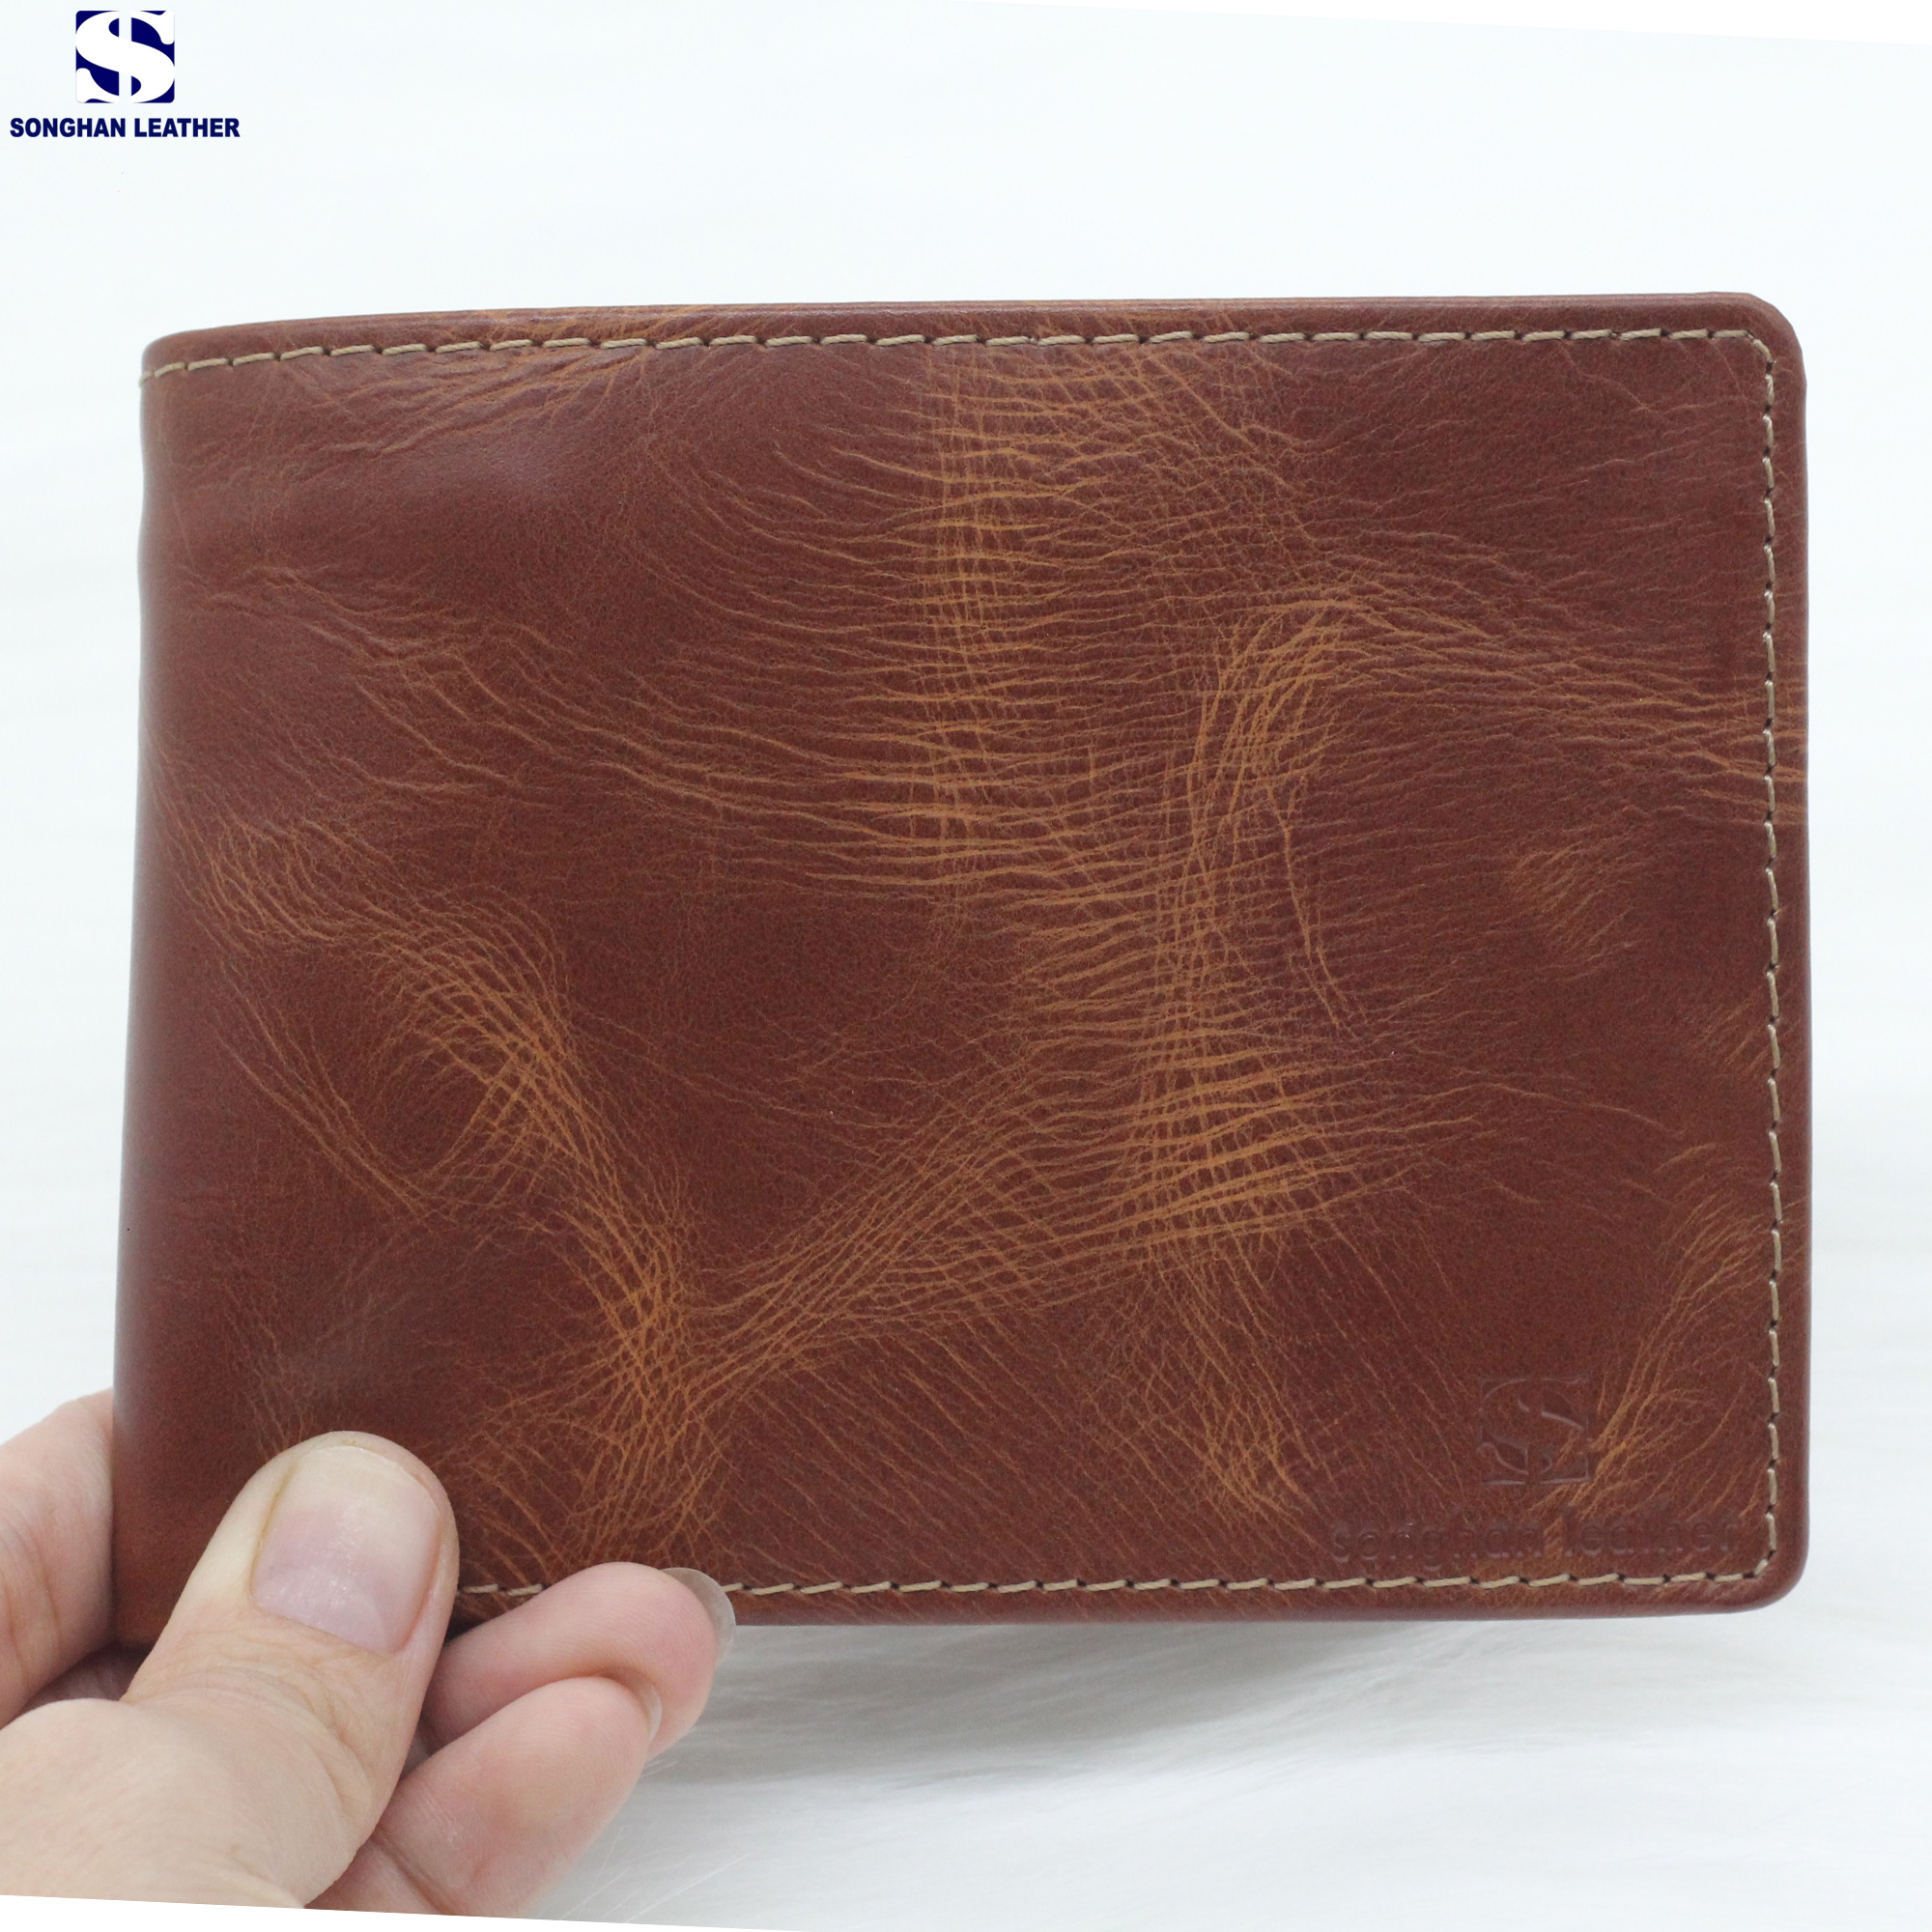 Ví Nam Da Bò Pullup Cao Cấp Dáng Đứng Ngang Songhan Leather – Thời Trang, Bảo Hành 12 Tháng